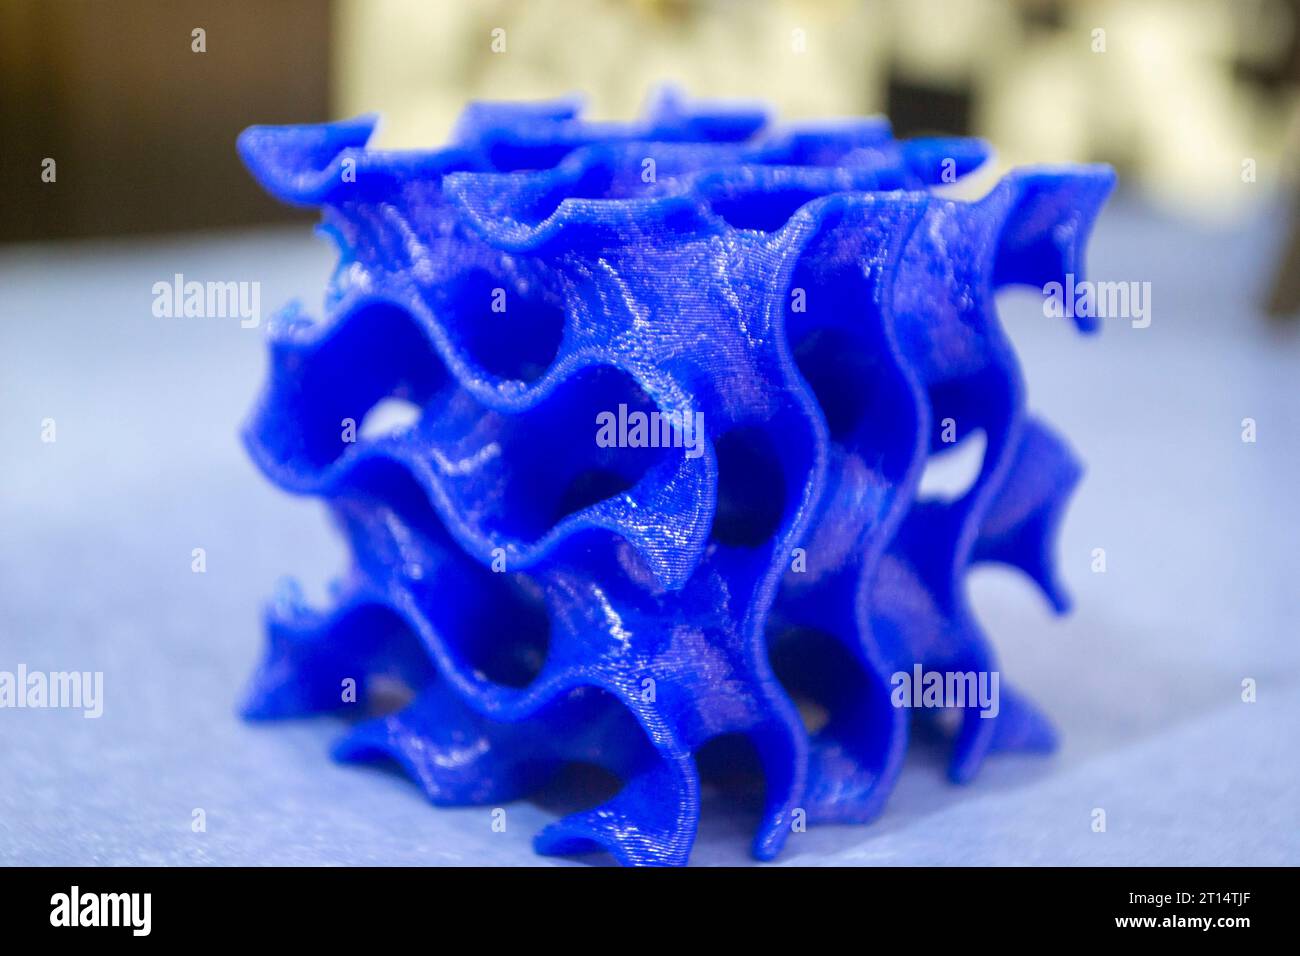 Modèle d'objet imprimé sur une imprimante 3D à partir de plastique fondu. Prototype imprimé par imprimante 3D de jouet à partir de plastique fondu. Conception et prototypage 3D. Nouvelle technologie d'impression 3D moderne et progressive additive Banque D'Images